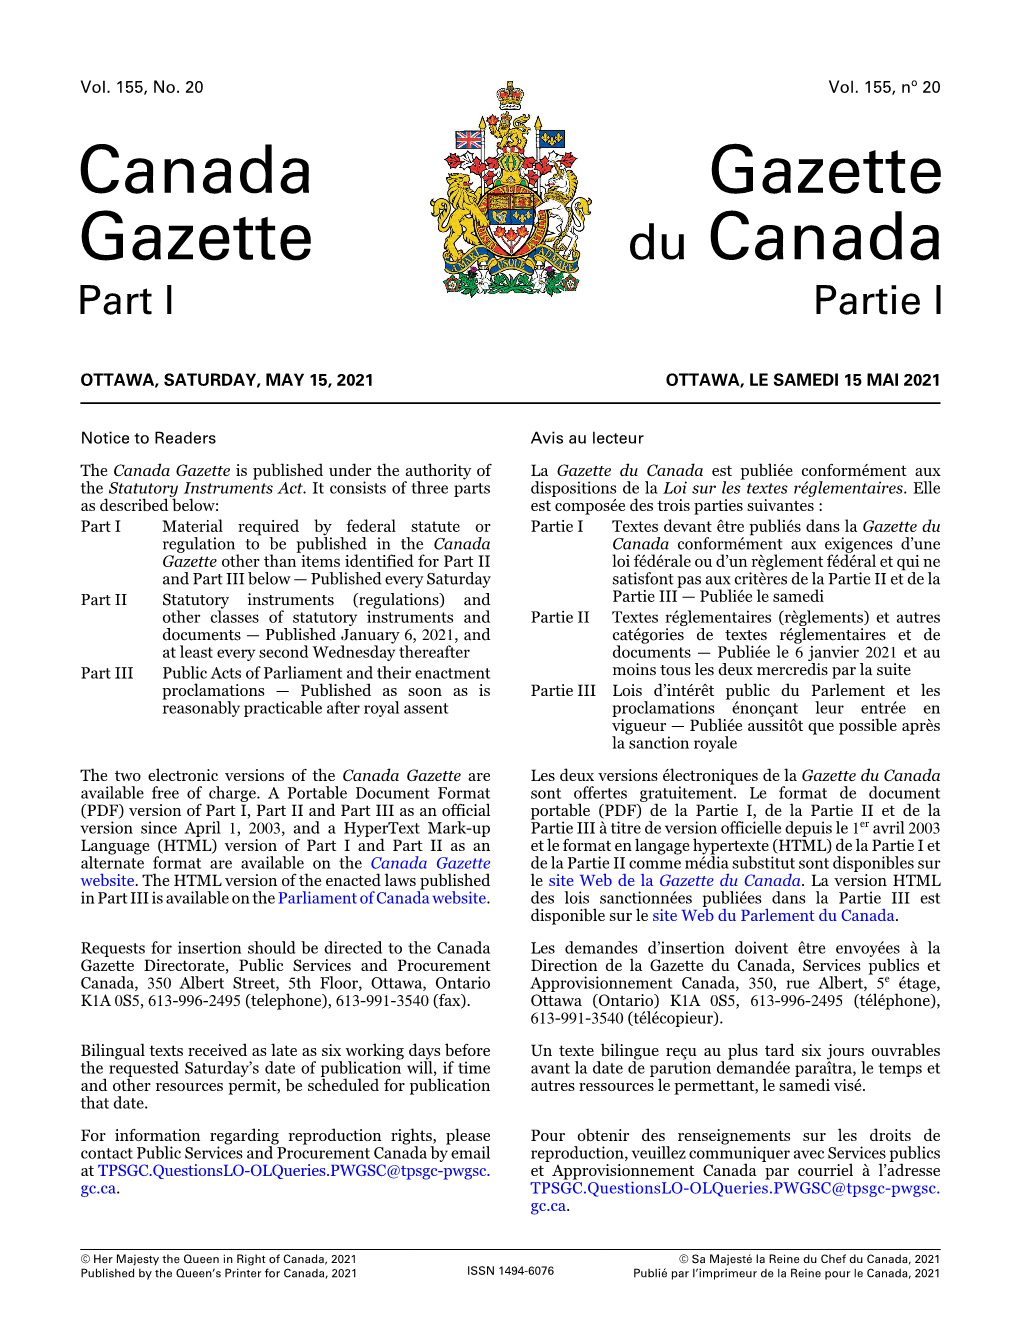 Canada Gazette, Part I, Is Années 2020 Et 2021, Publié Dans La Partie I De La Gazette Amended As Set out in Schedule 1